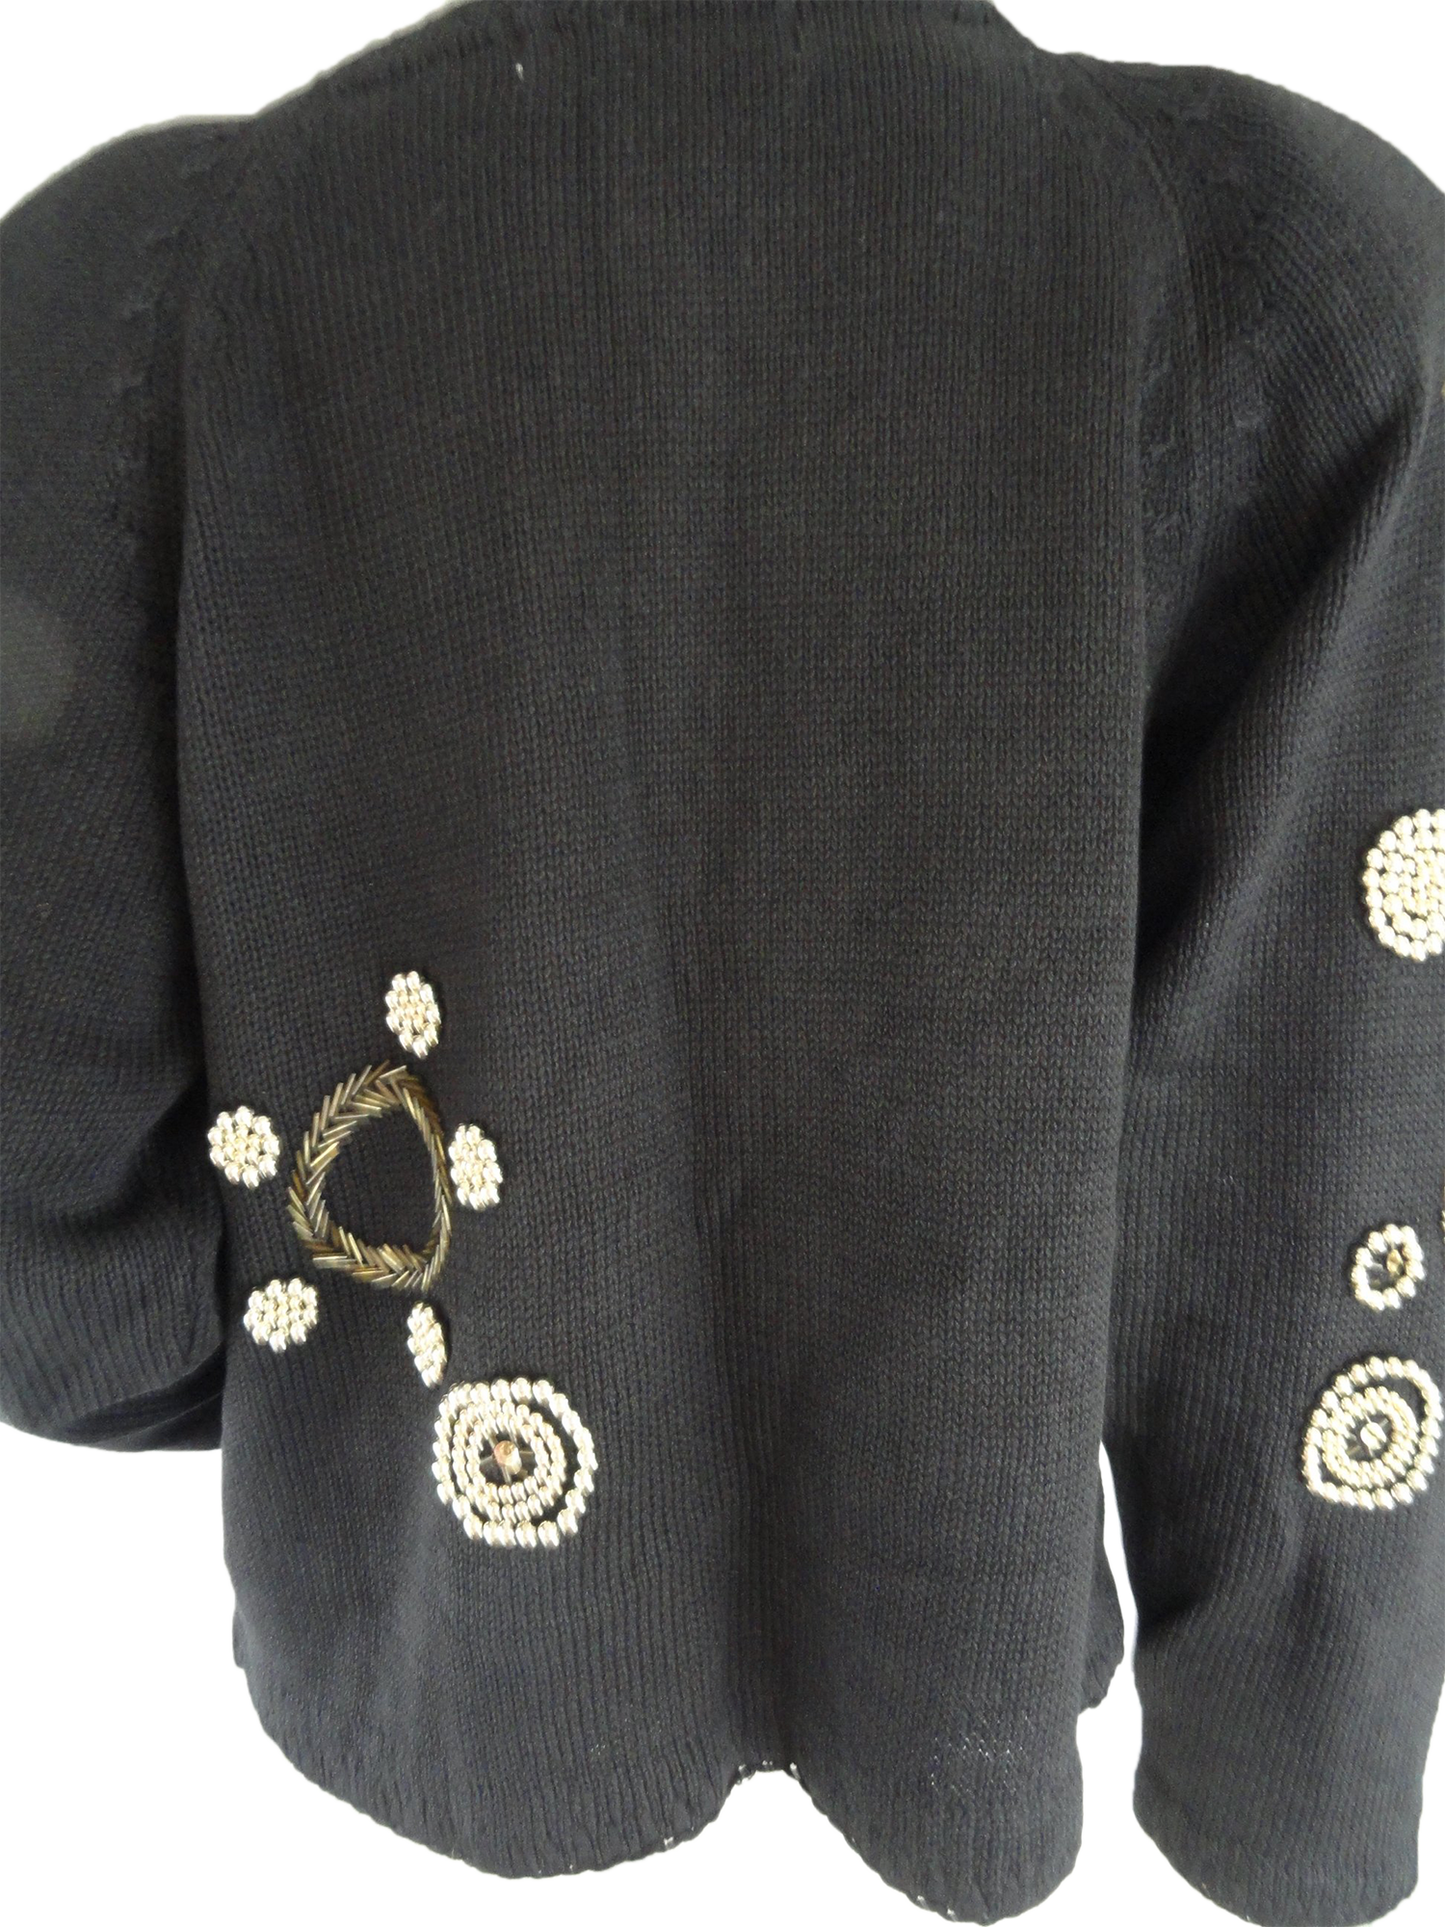 Victoria Harbot Sweater Black Beaded Embellished Size M (SKU 000273-1)